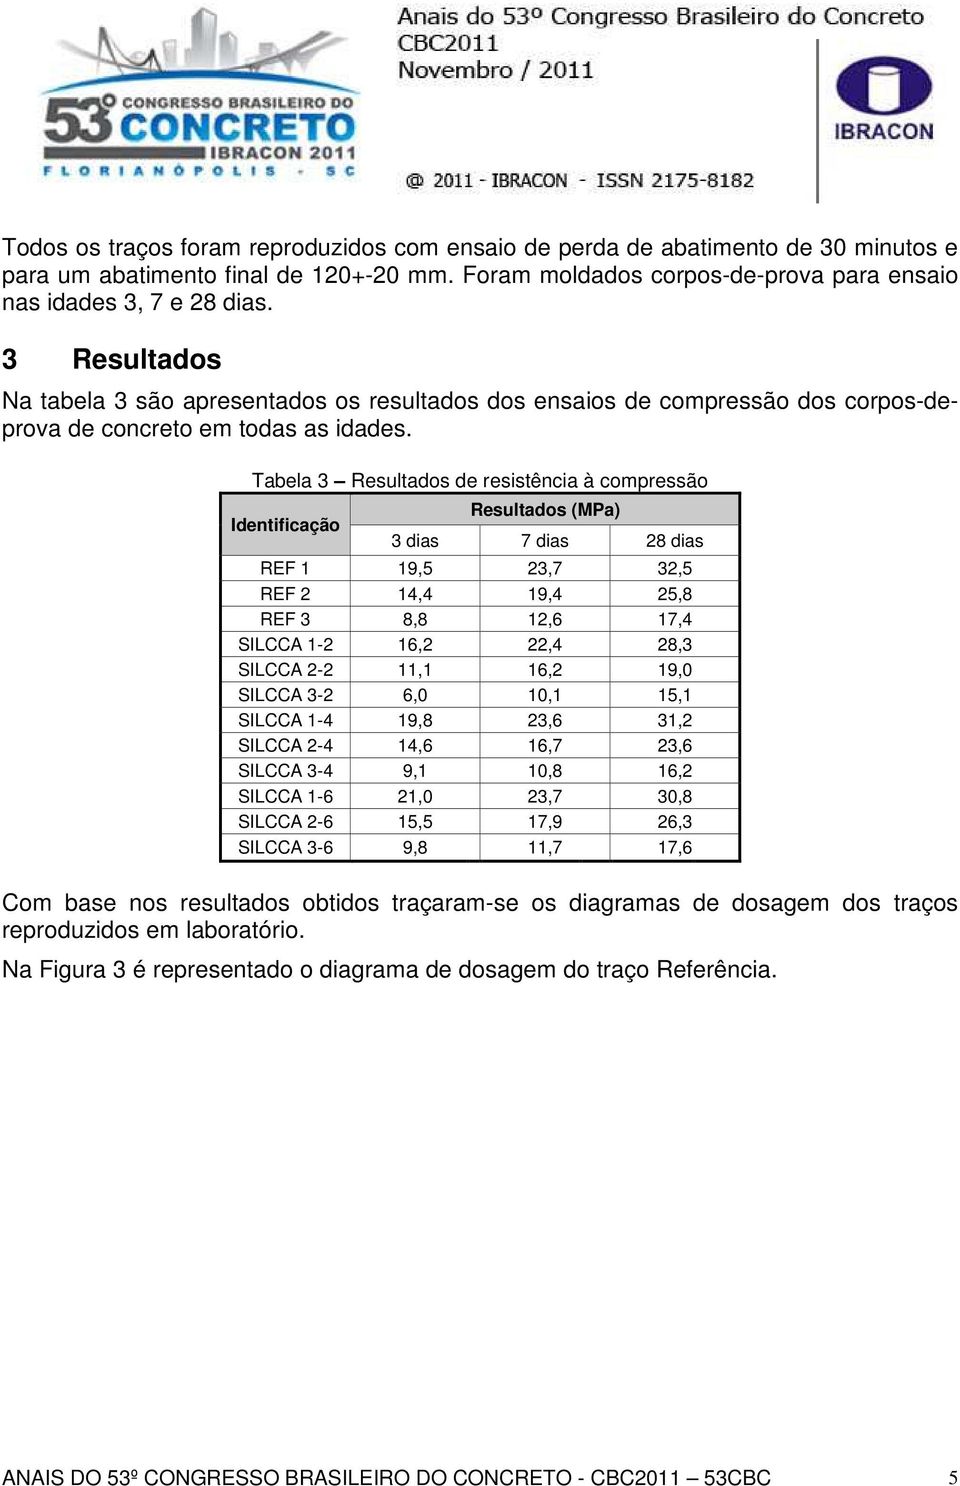 Tabela 3 Resultados de resistência à compressão Identificação Resultados (MPa) 3 dias 7 dias 28 dias REF 1 19,5 23,7 32,5 REF 2 14,4 19,4 25,8 REF 3 8,8 12,6 17,4 SILCCA 1-2 16,2 22,4 28,3 SILCCA 2-2